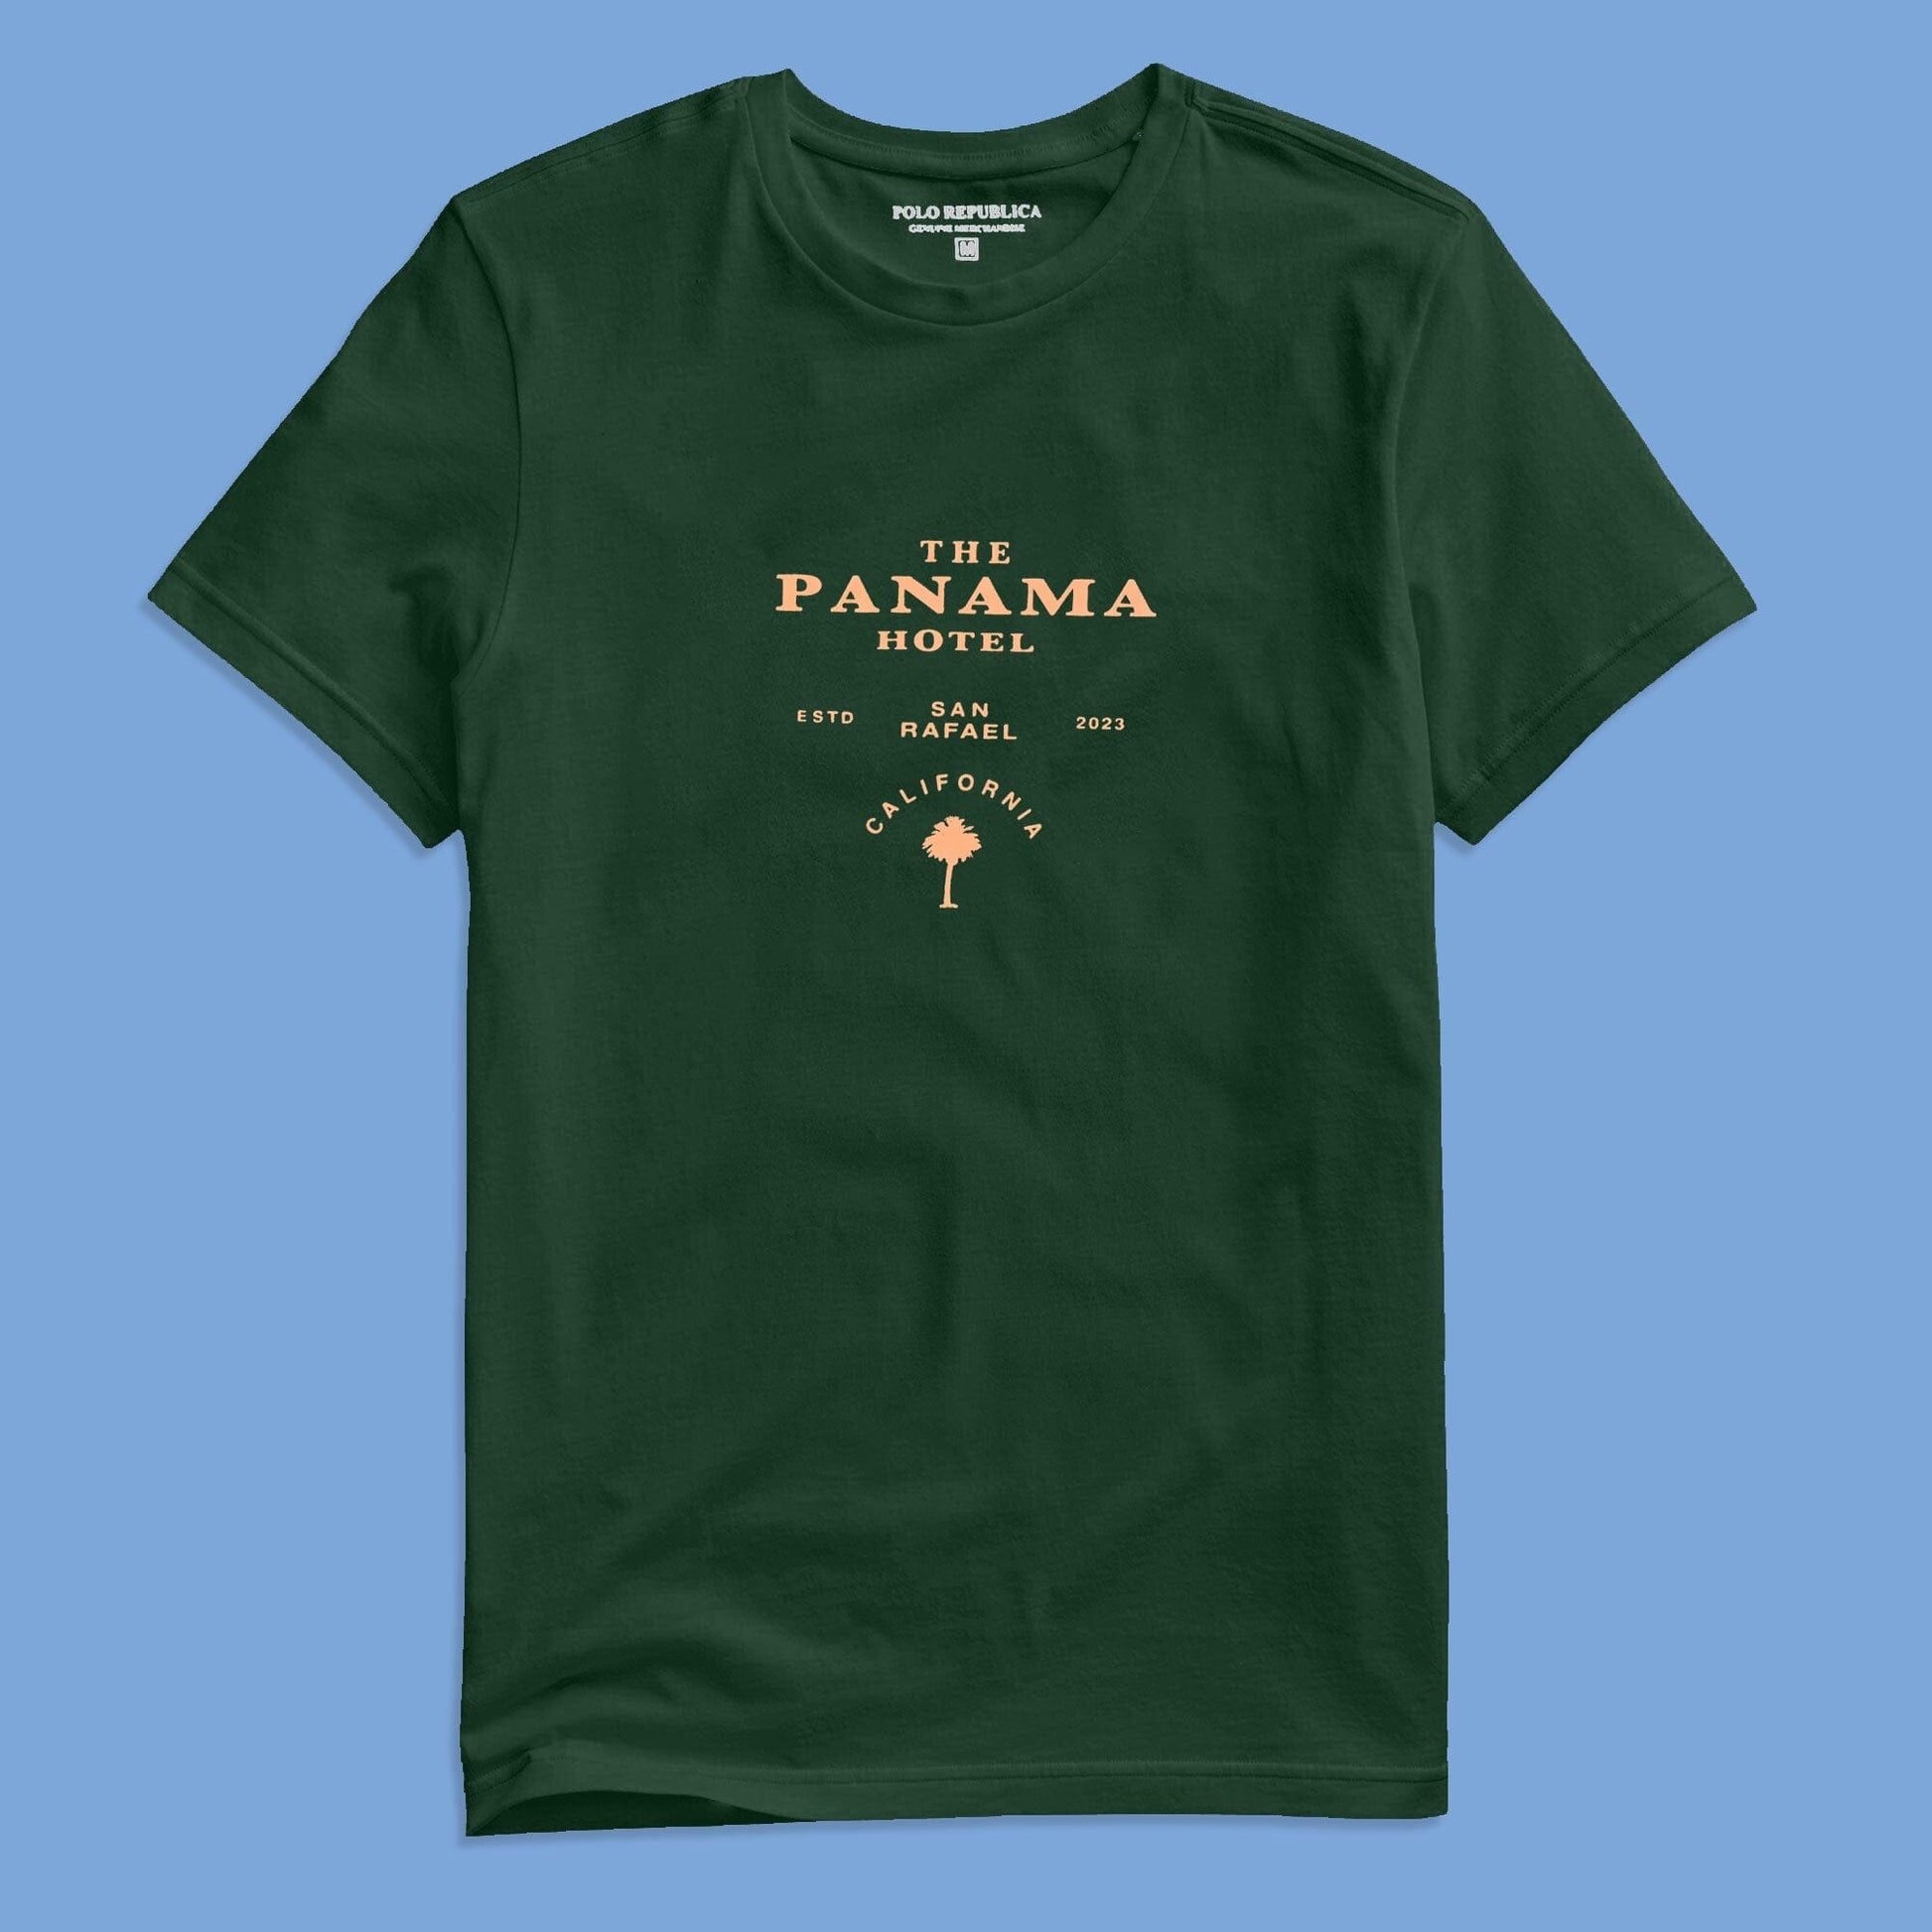 Polo Republica Men's Panama Hotel Printed Crew Neck Tee Shirt Men's Tee Shirt Polo Republica 